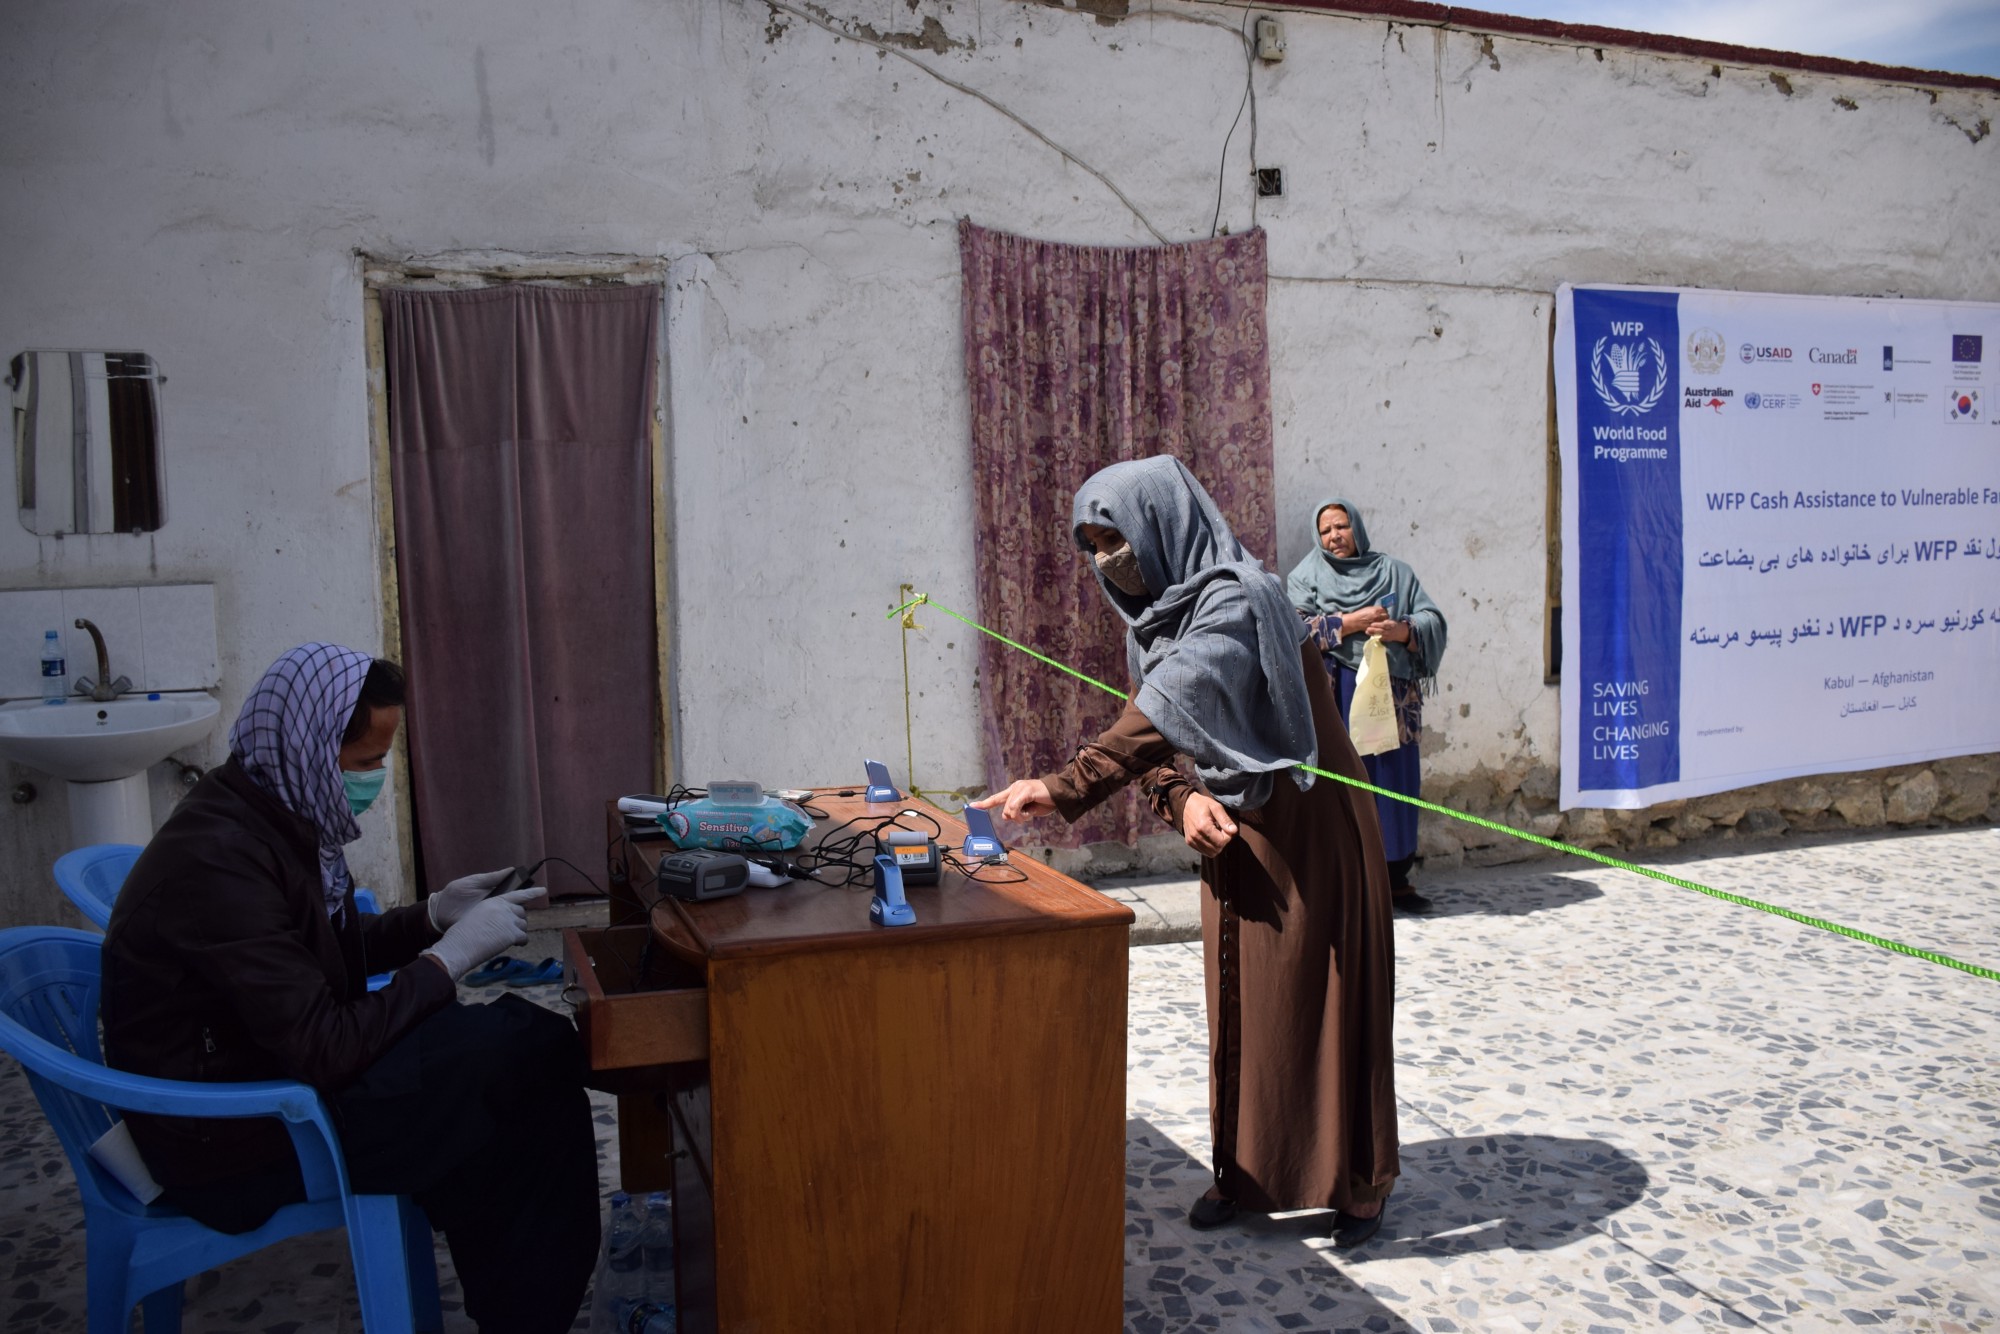 أفغانستان: سيدة تتلقى المساعدات النقدية وهي تحافظ على التباعد الاجتماعي لتجنب انتشار العدوى. صورة/نفيسة رشتين